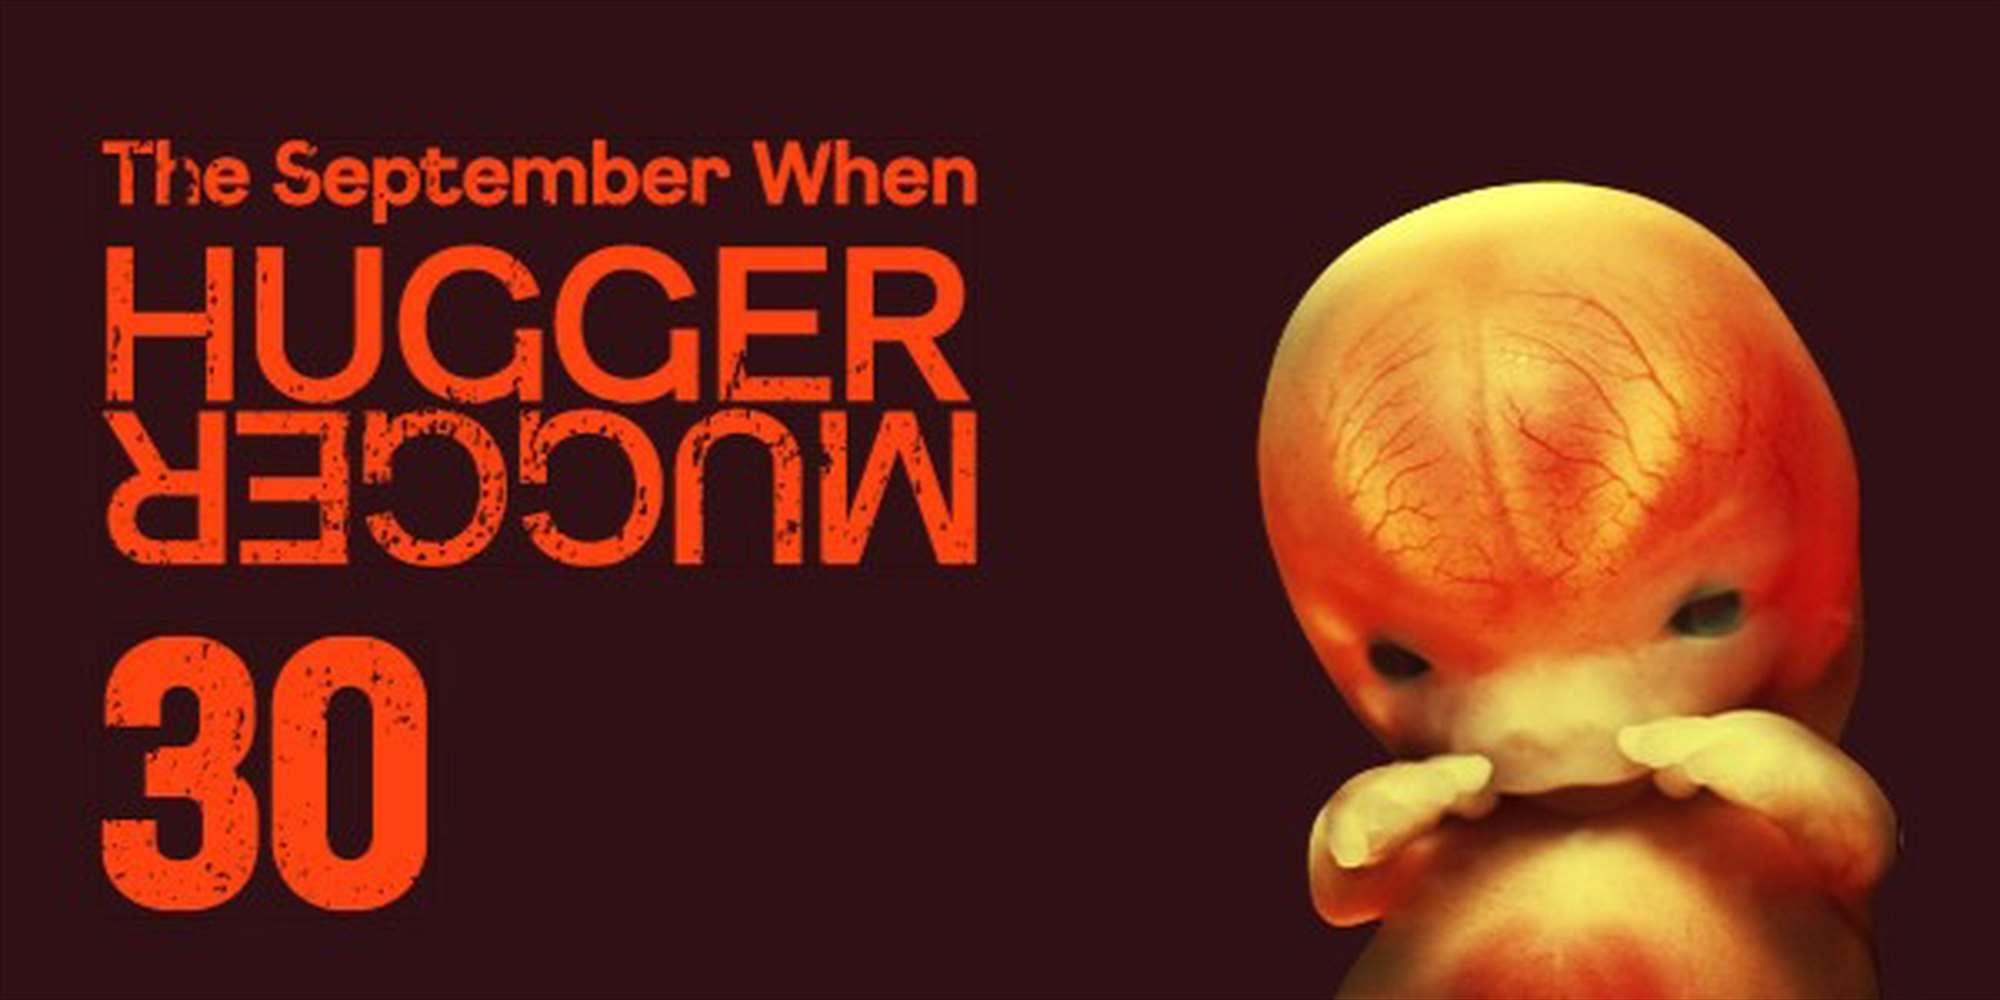 The September When – HuggerMugger